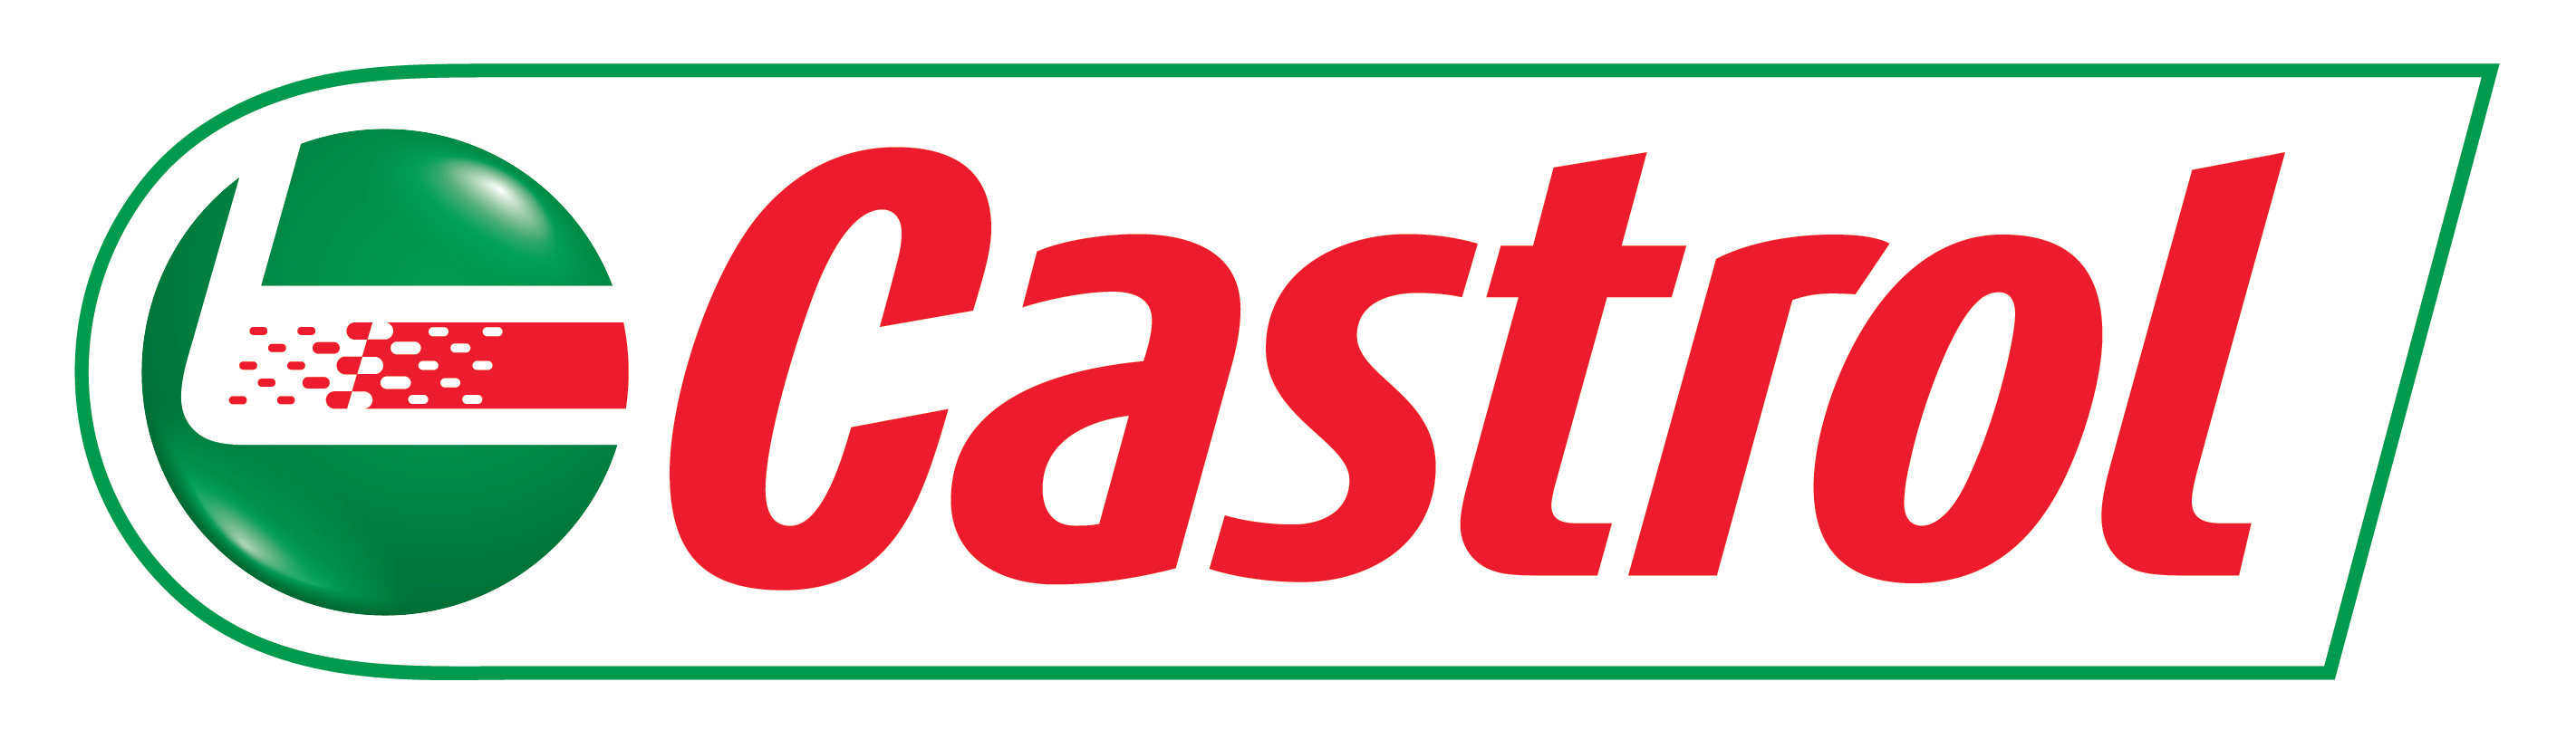 castrol_logo vektor-01